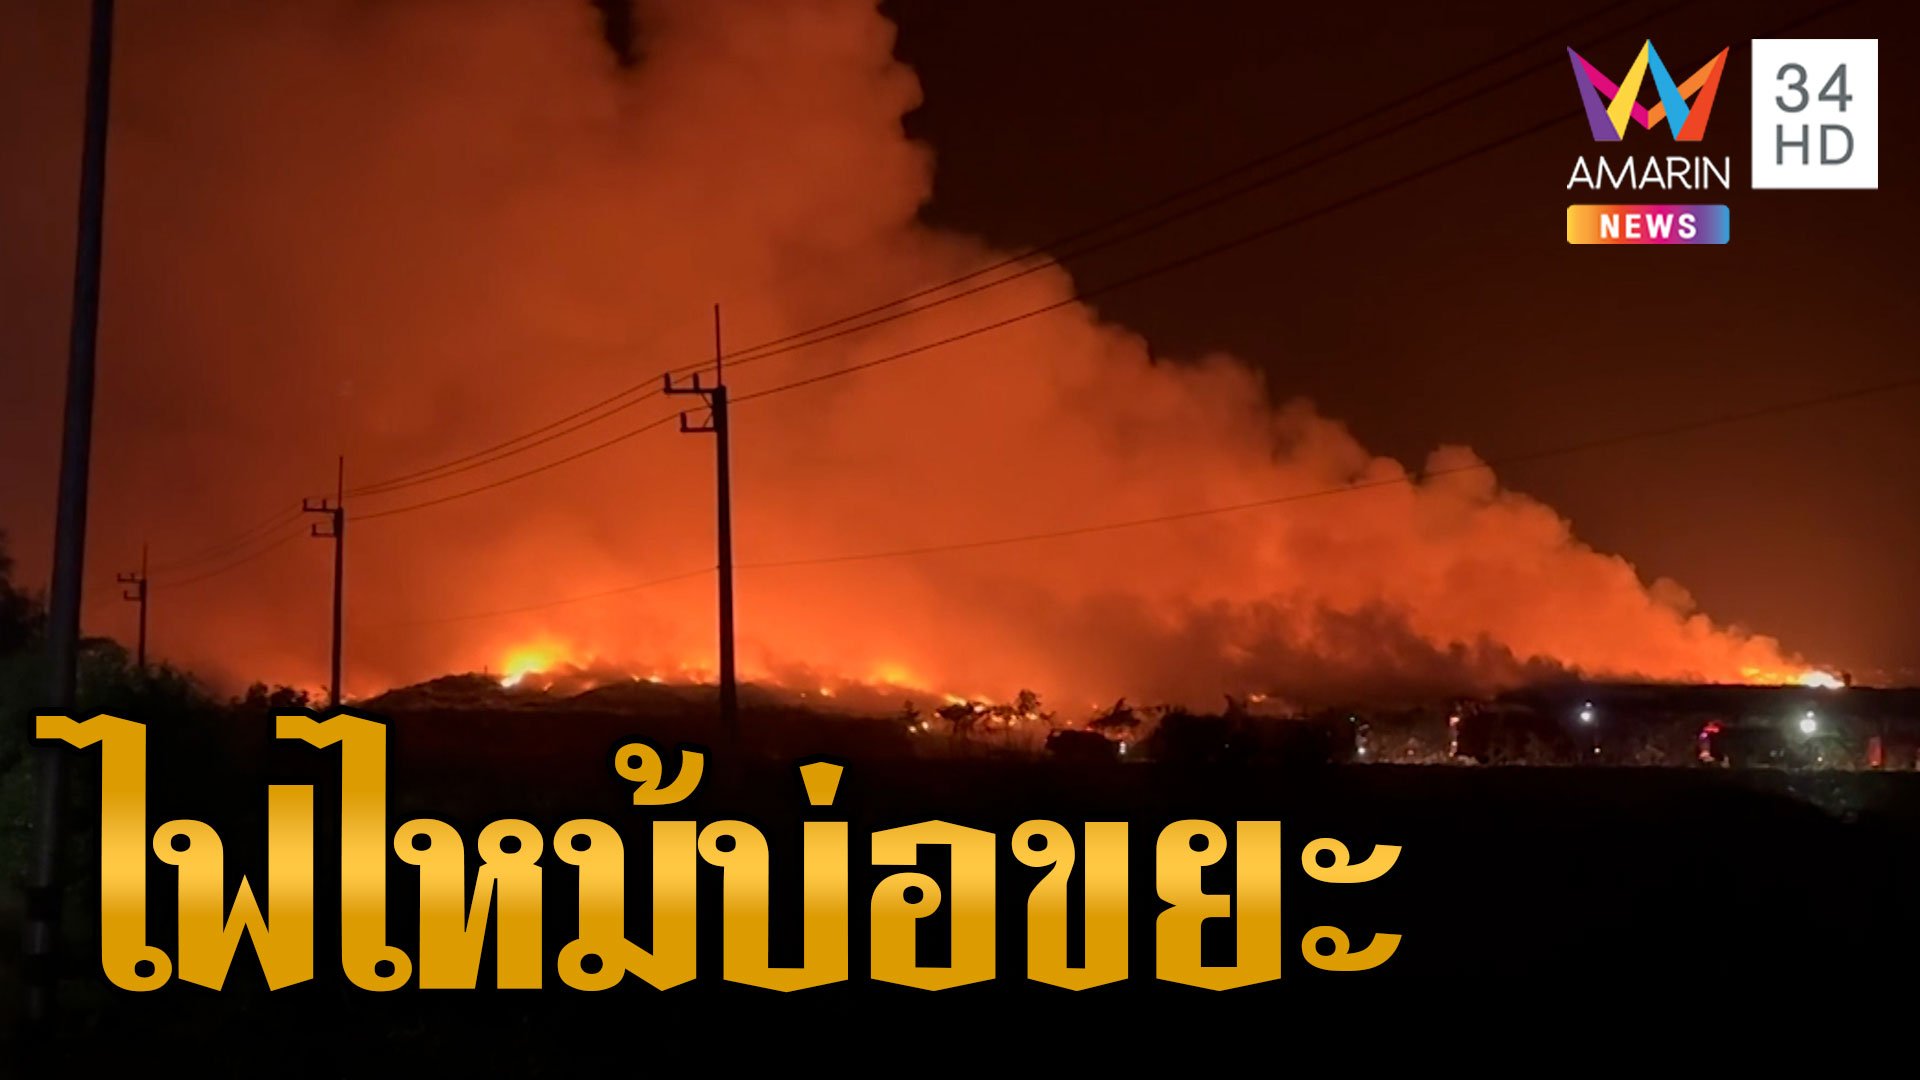 ไฟไหม้บ่อขยะควันฟุ้งกระจาย ชาวบ้านเดือดร้อนหนัก | ข่าวเที่ยงอมรินทร์ | 26 เม.ย. 66 | AMARIN TVHD34